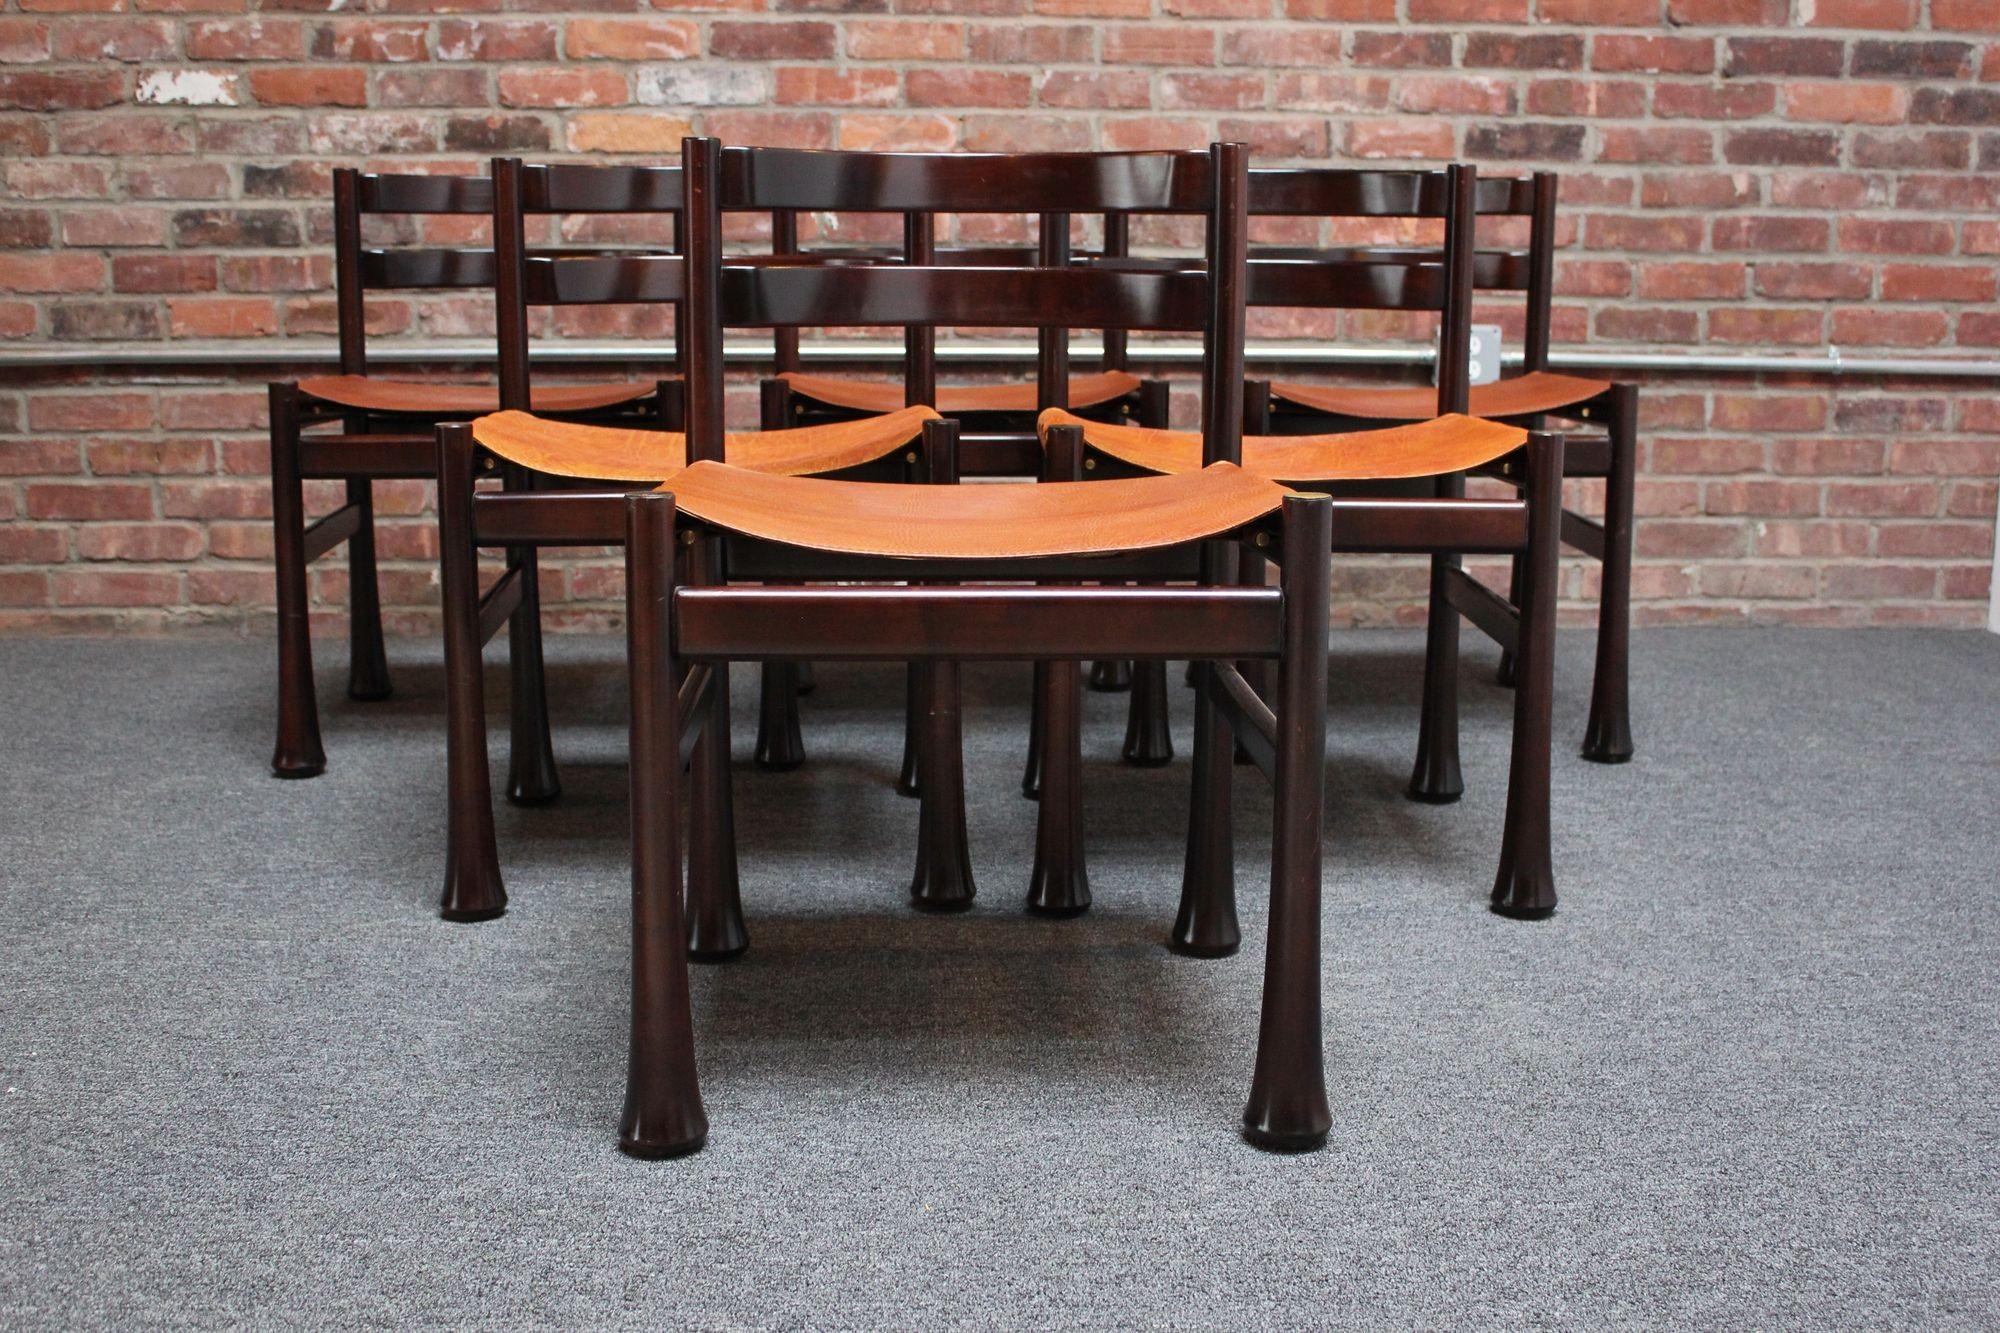 Impressionnant ensemble de six chaises de salle à manger en bois de rose avec sièges en cuir et accents en laiton par Luciano Frigerio (ca. 1970, Italie).
Des cadres profondément sculptés avec un design de dossier à lattes incurvé et des pieds épais